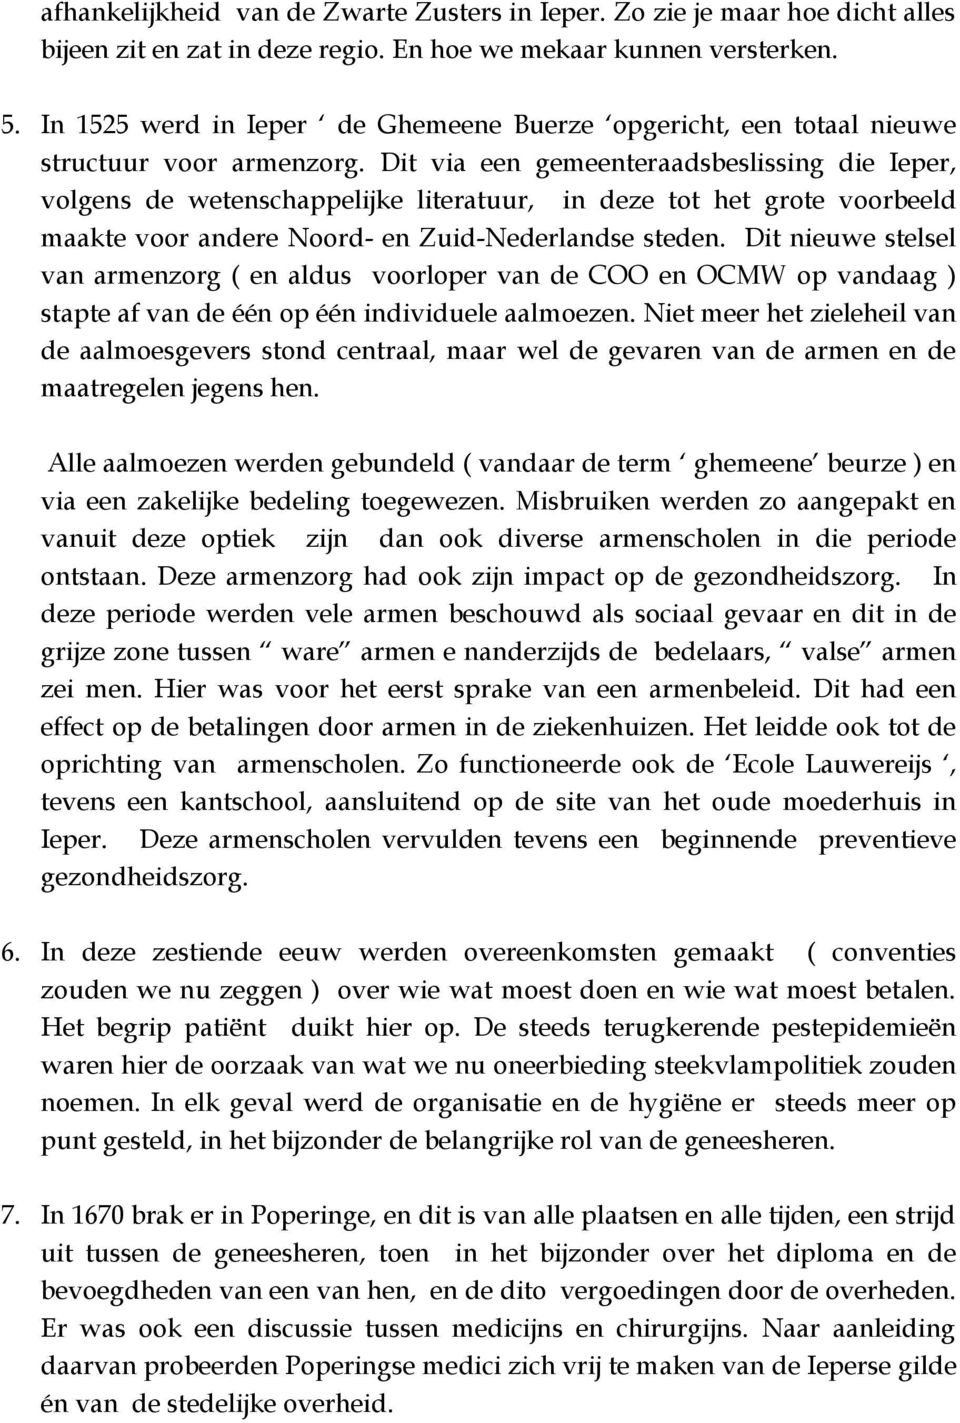 Dit via een gemeenteraadsbeslissing die Ieper, volgens de wetenschappelijke literatuur, in deze tot het grote voorbeeld maakte voor andere Noord- en Zuid-Nederlandse steden.